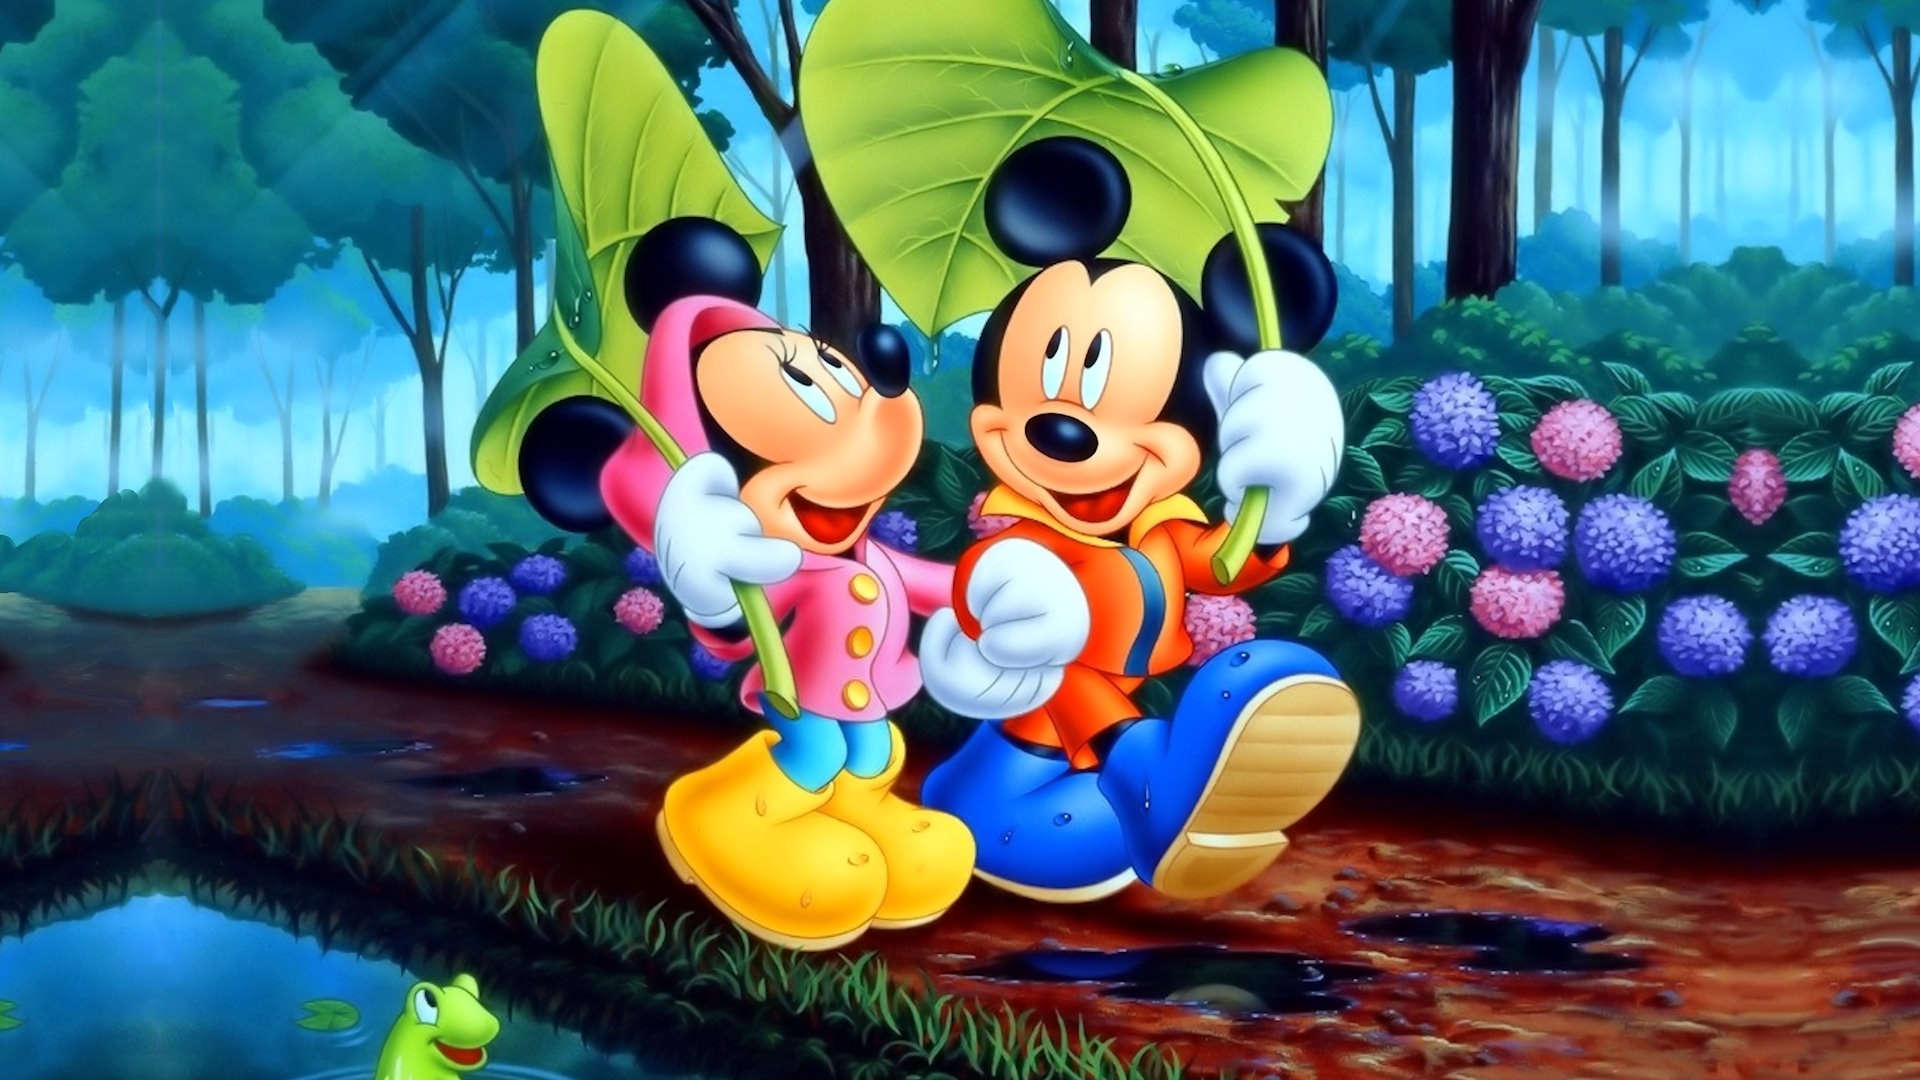 Best Screensavers Disney Screensaver And Wallpaper